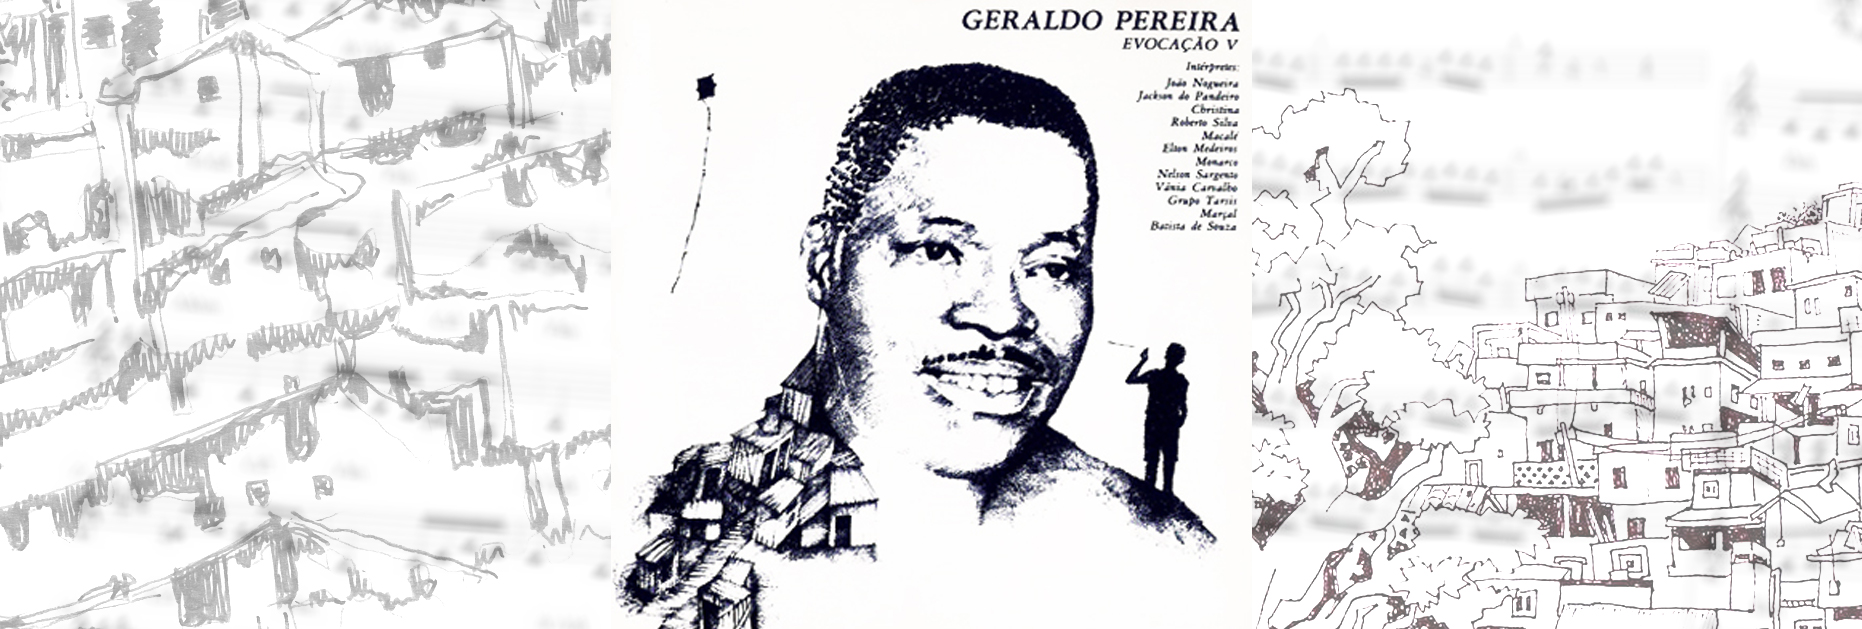 Evocação V, de Geraldo Pereira